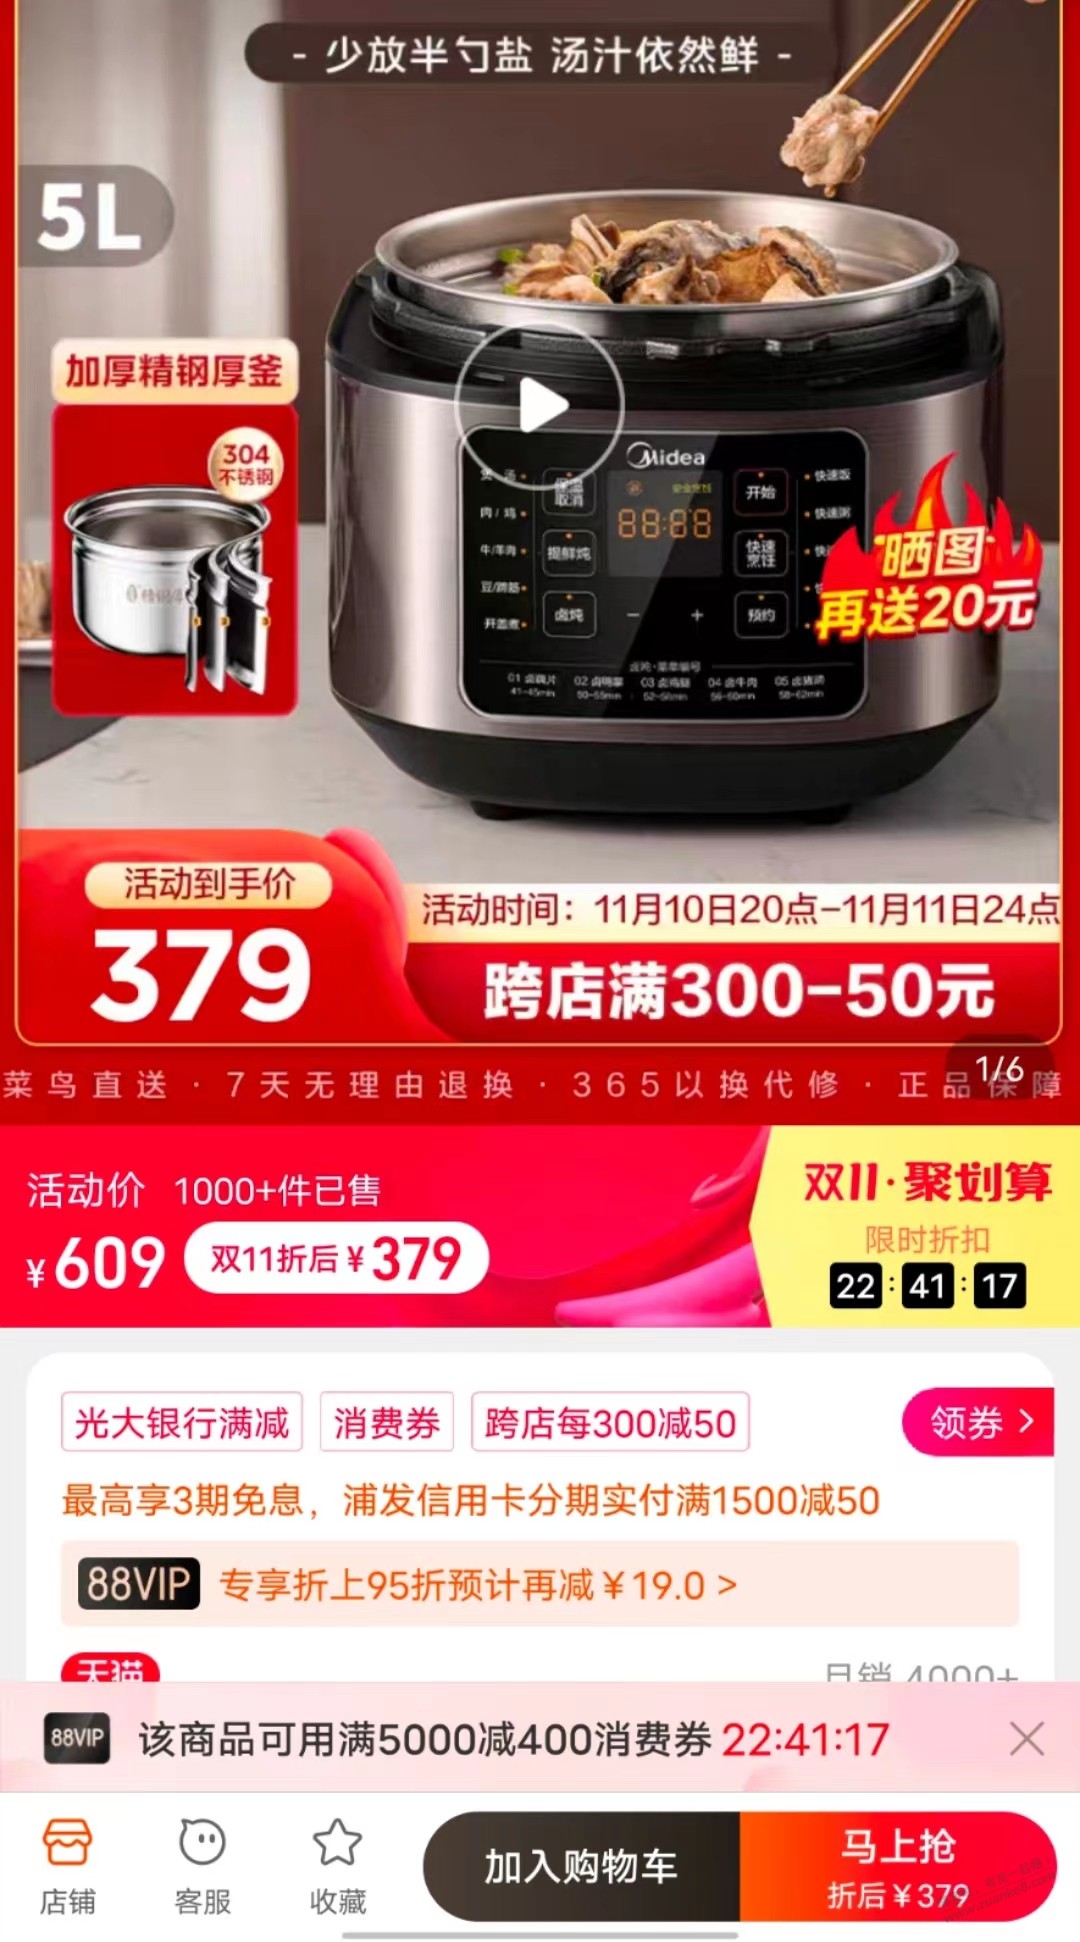 速度-pdd电压力锅好价-比淘宝同款提鲜的便宜180-惠小助(52huixz.com)